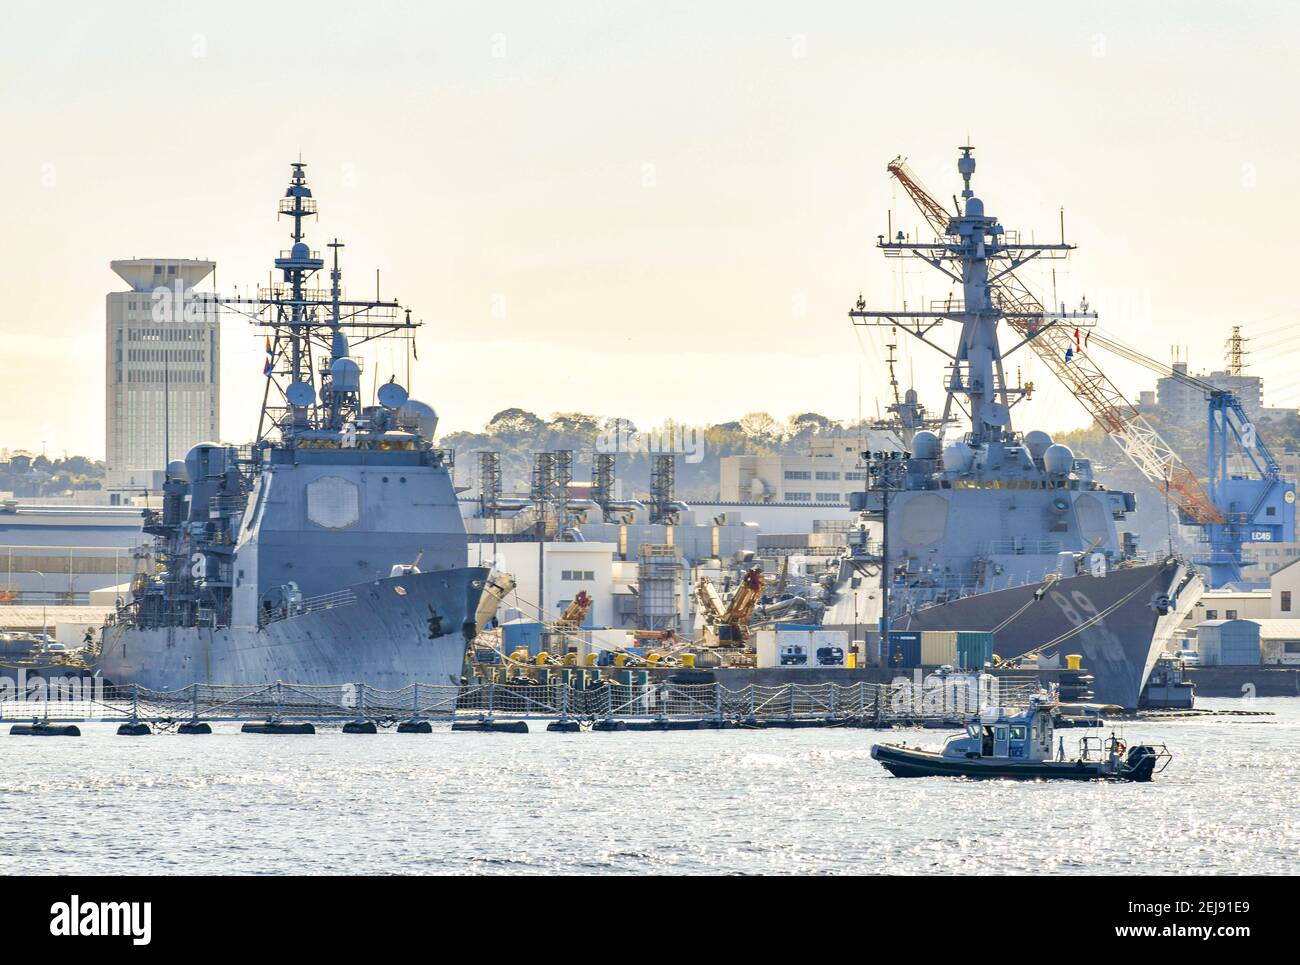 7° flotta USA USS Antietam (CG-54) Cruiser di classe Ticonderoga e USS Mustin (DDG-89) cacciatorpediniere di classe Burke Arleigh sono ormeggiati a homeport a Yokosuka, Giappone, il 6 gennaio 2020. (Foto di Yichuan Cao/Sipa USA) Foto Stock